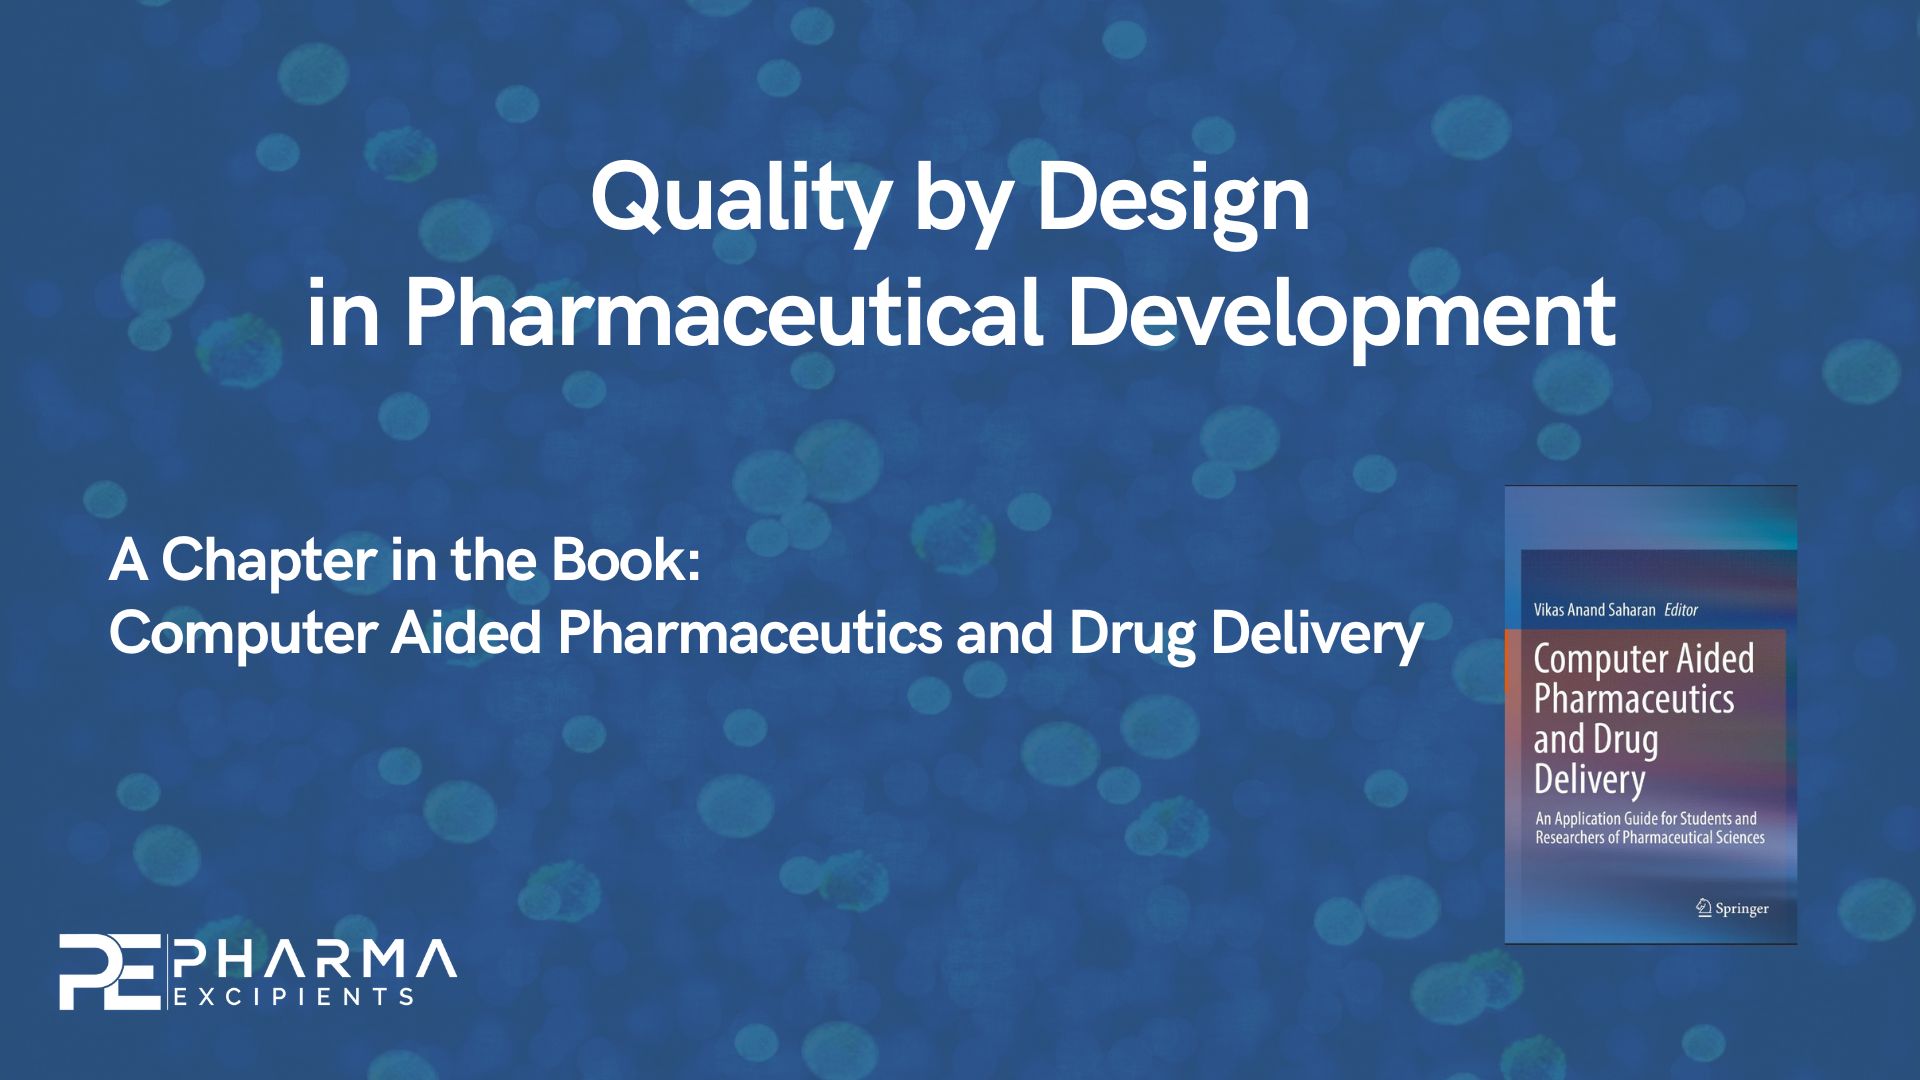 Qualidade por Design no Desenvolvimento Farmacêutico